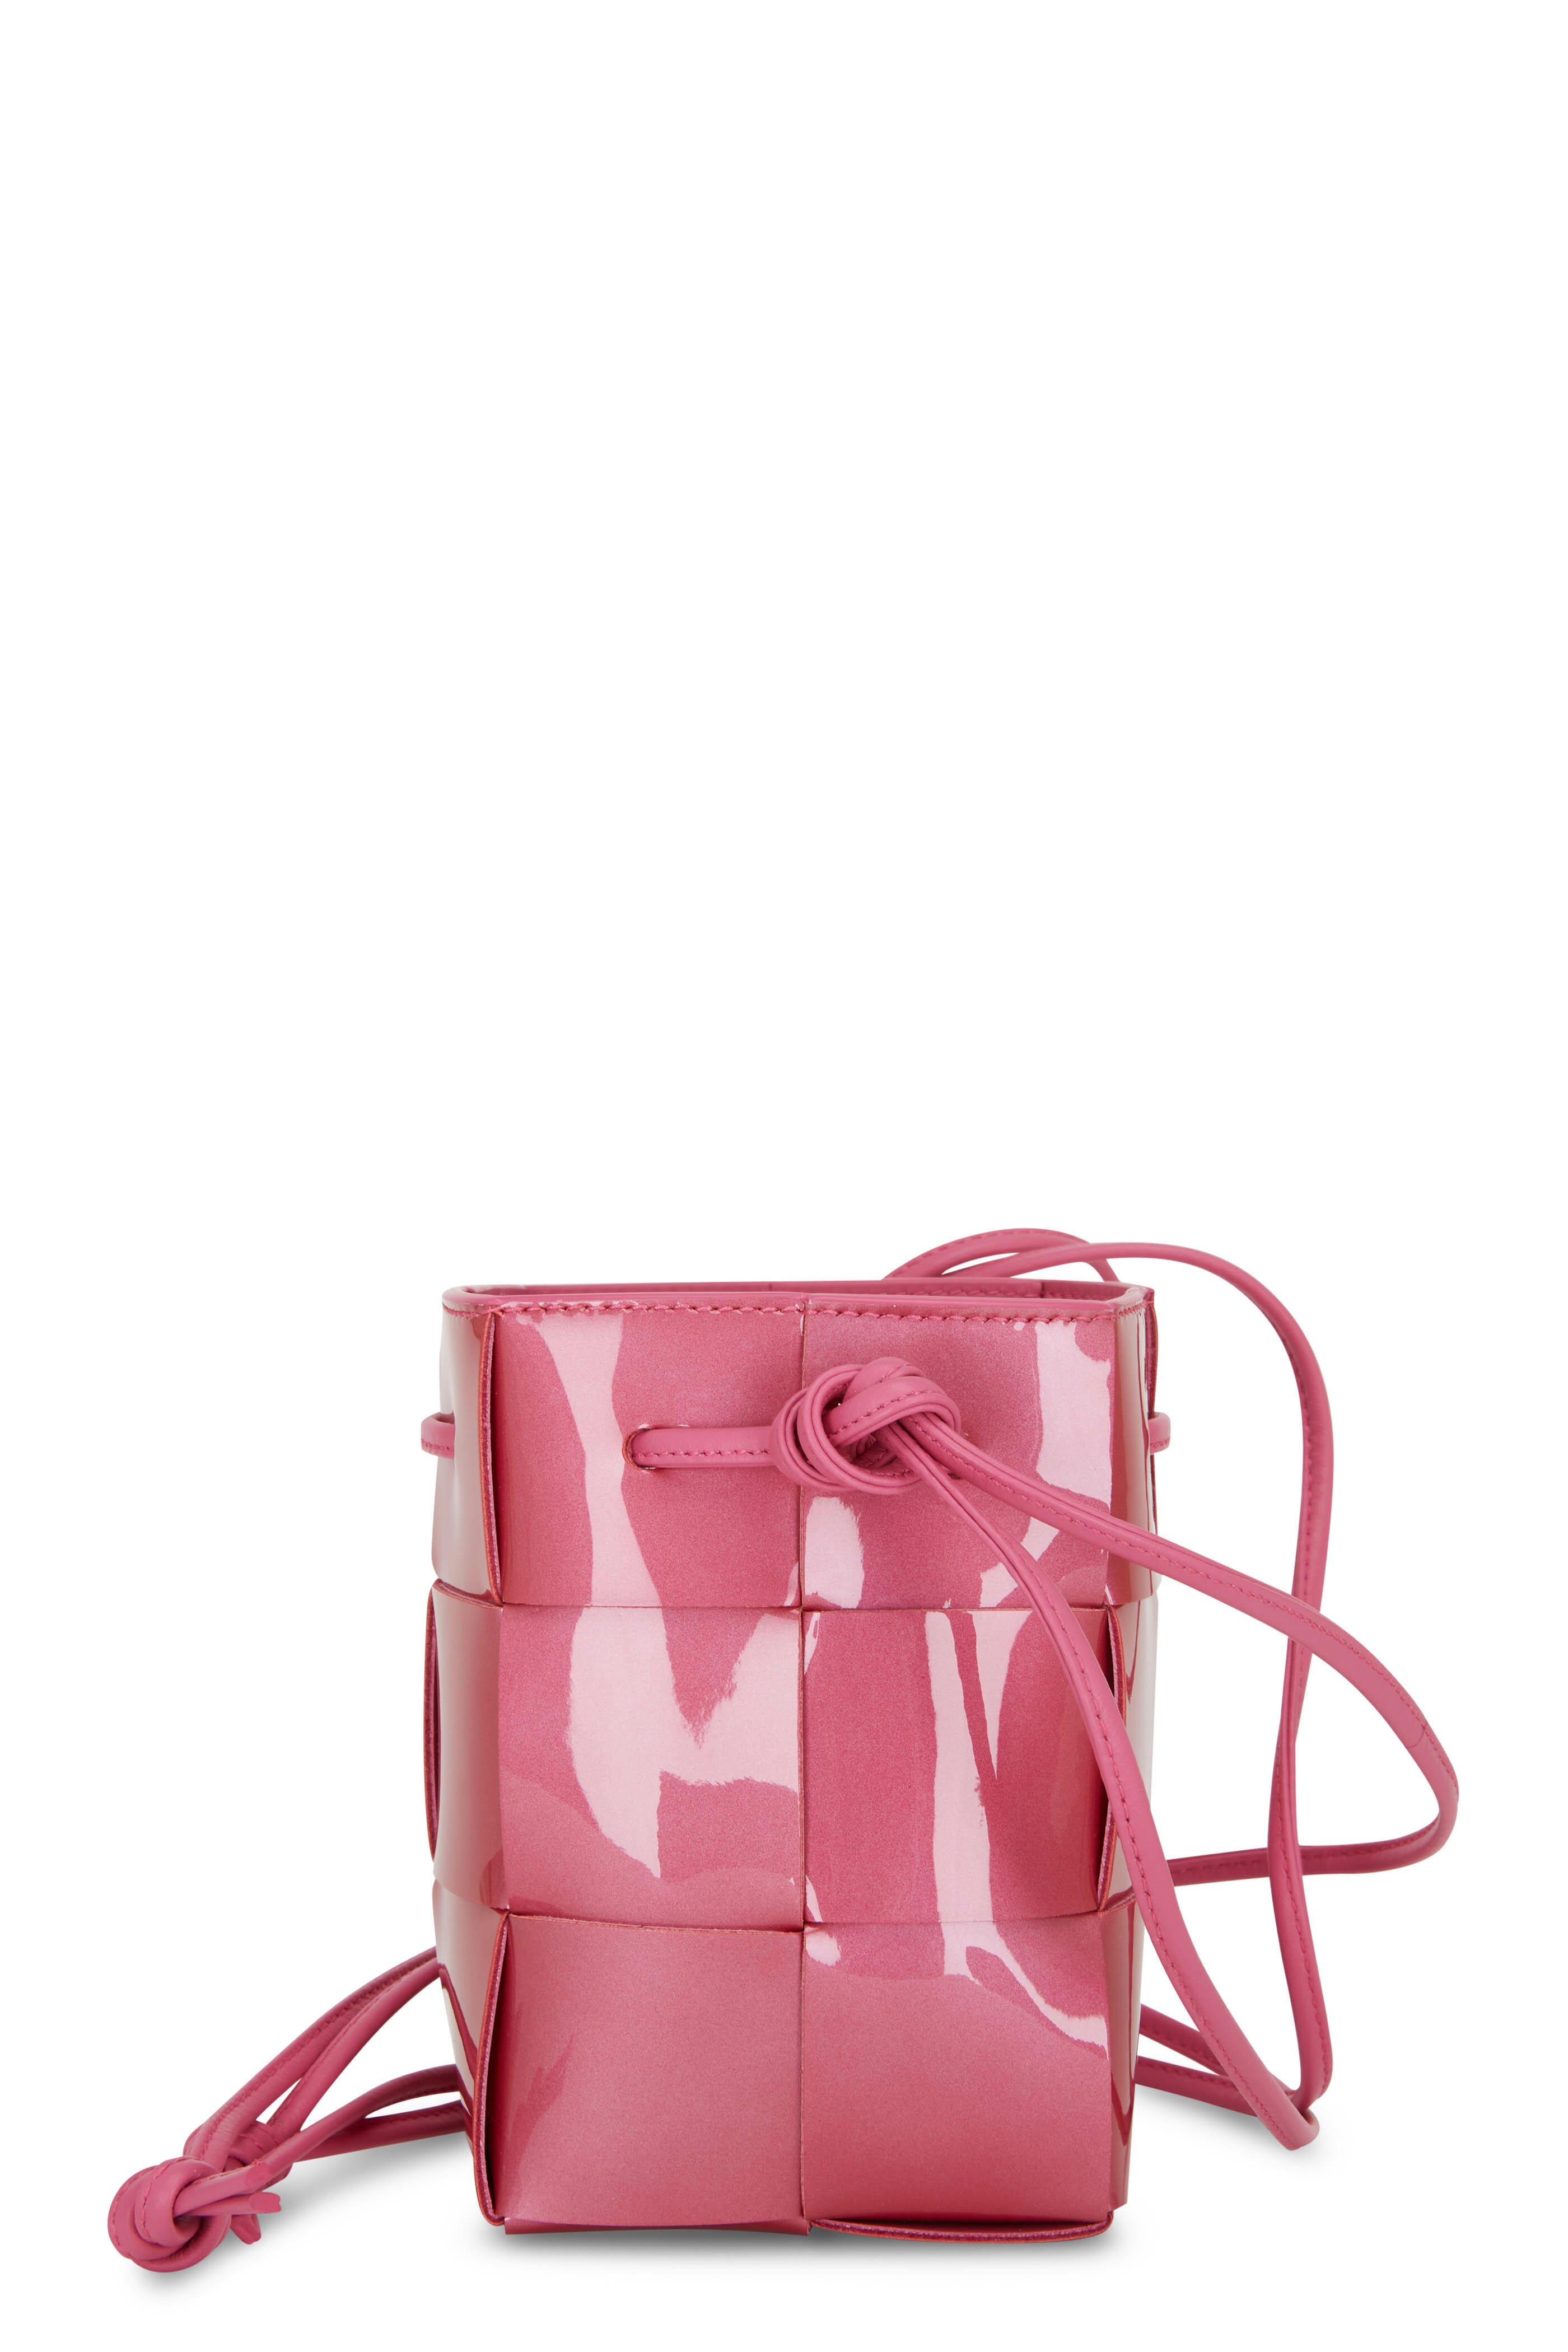 Bottega Veneta 'cassette Small' Bucket Bag in Pink